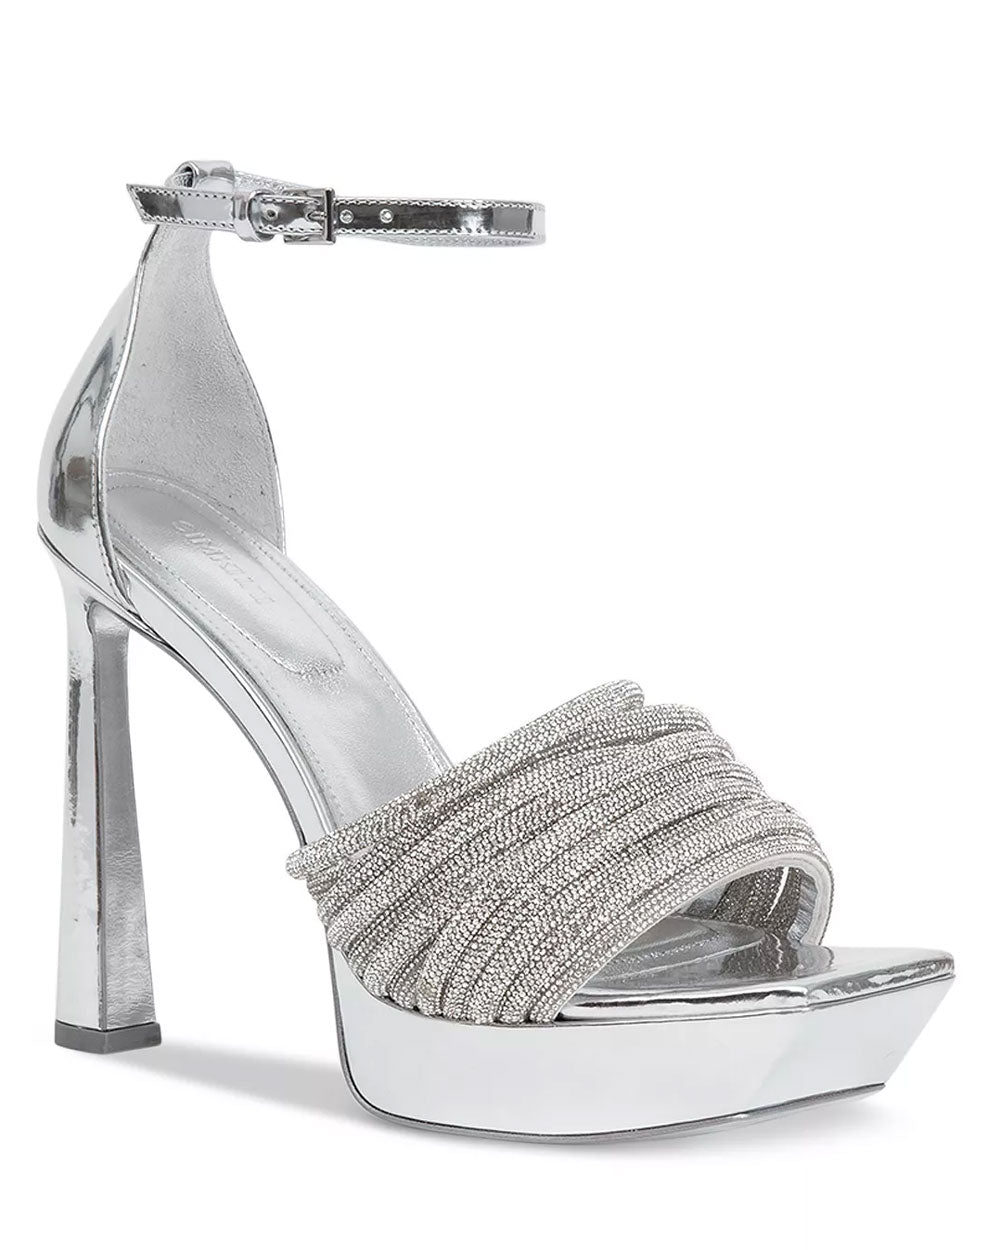 Lena Crystal Platform Sandal in Silver